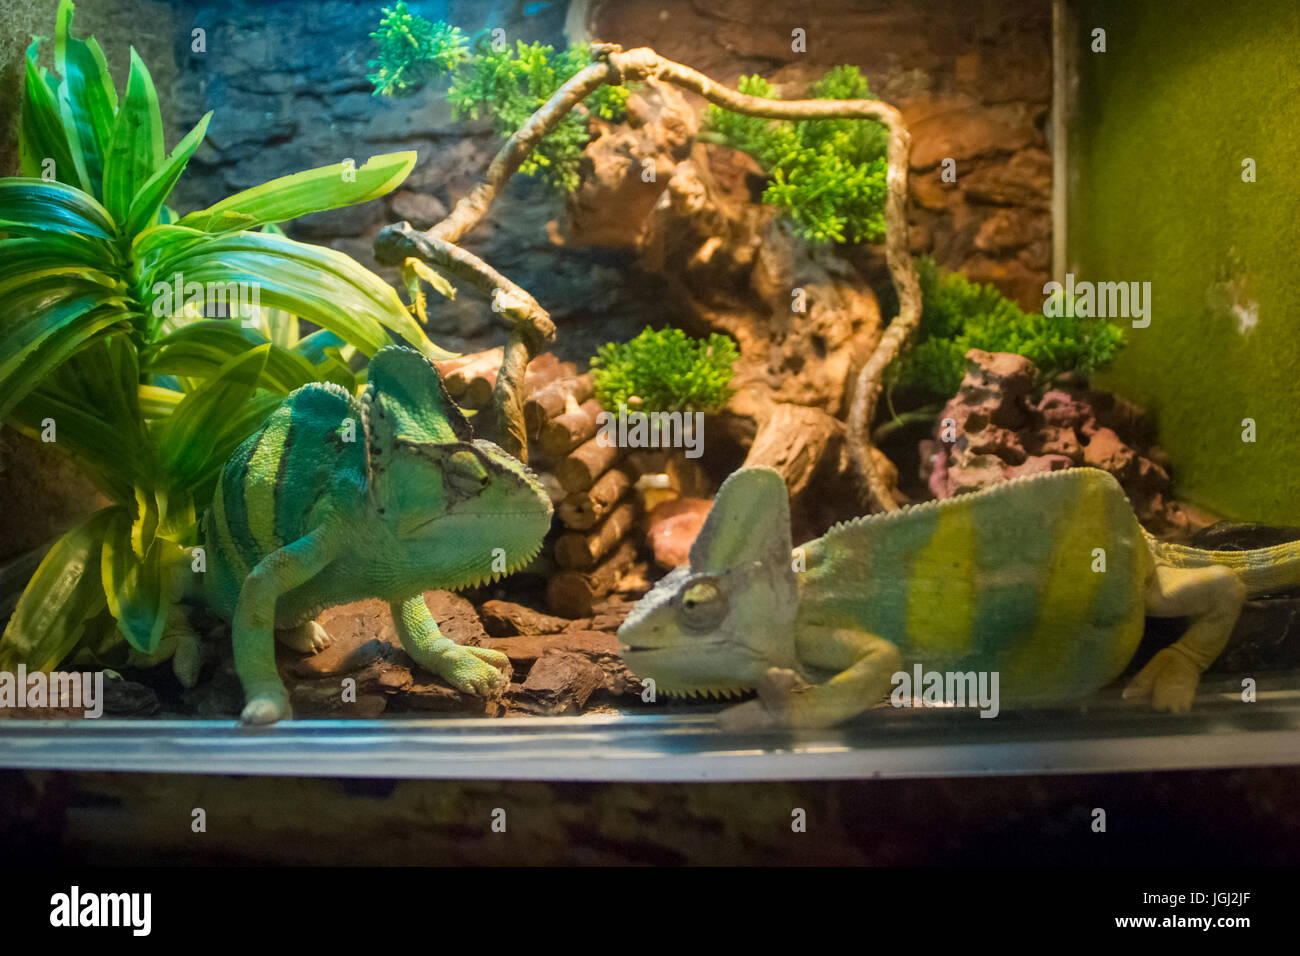 Two chameleons in terrarium. Stock Photo